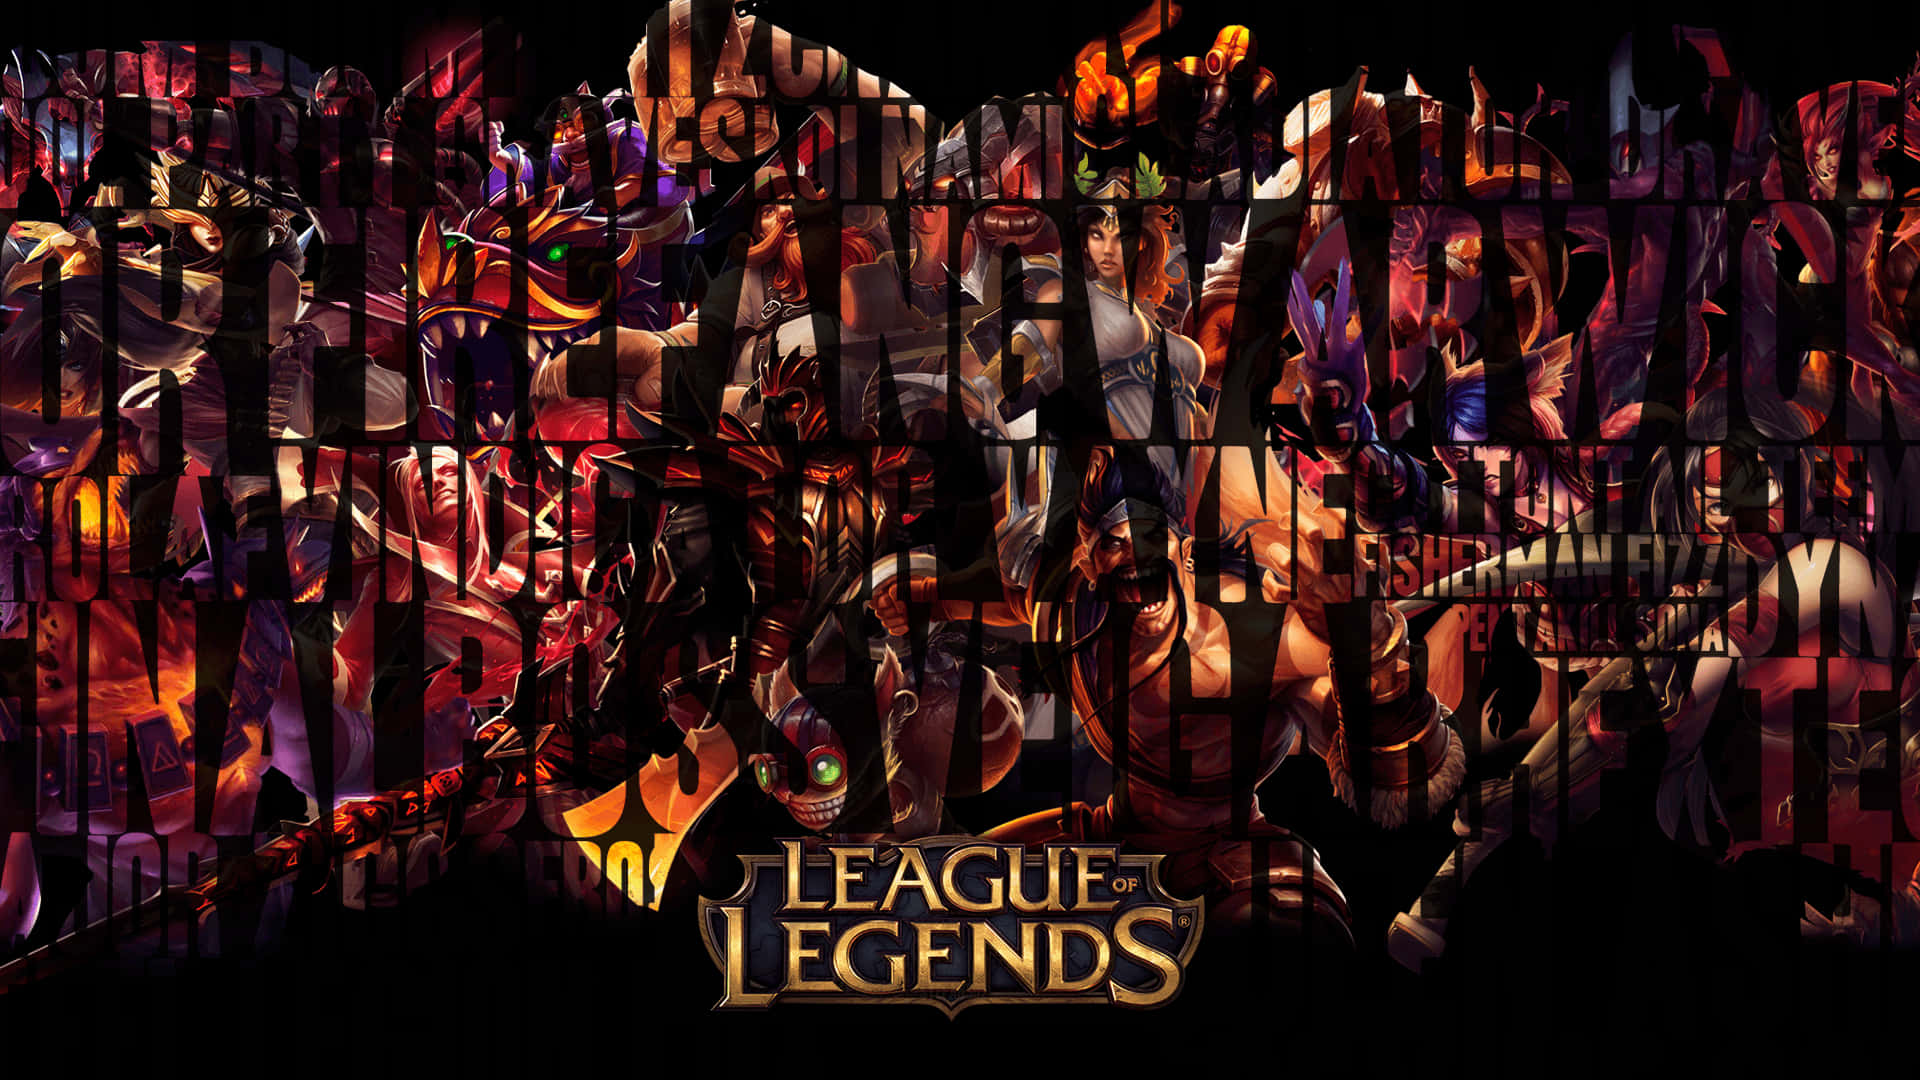 Nyd en mere omfattende spiloplevelse med et League of Legends-bærbarentapet. Wallpaper